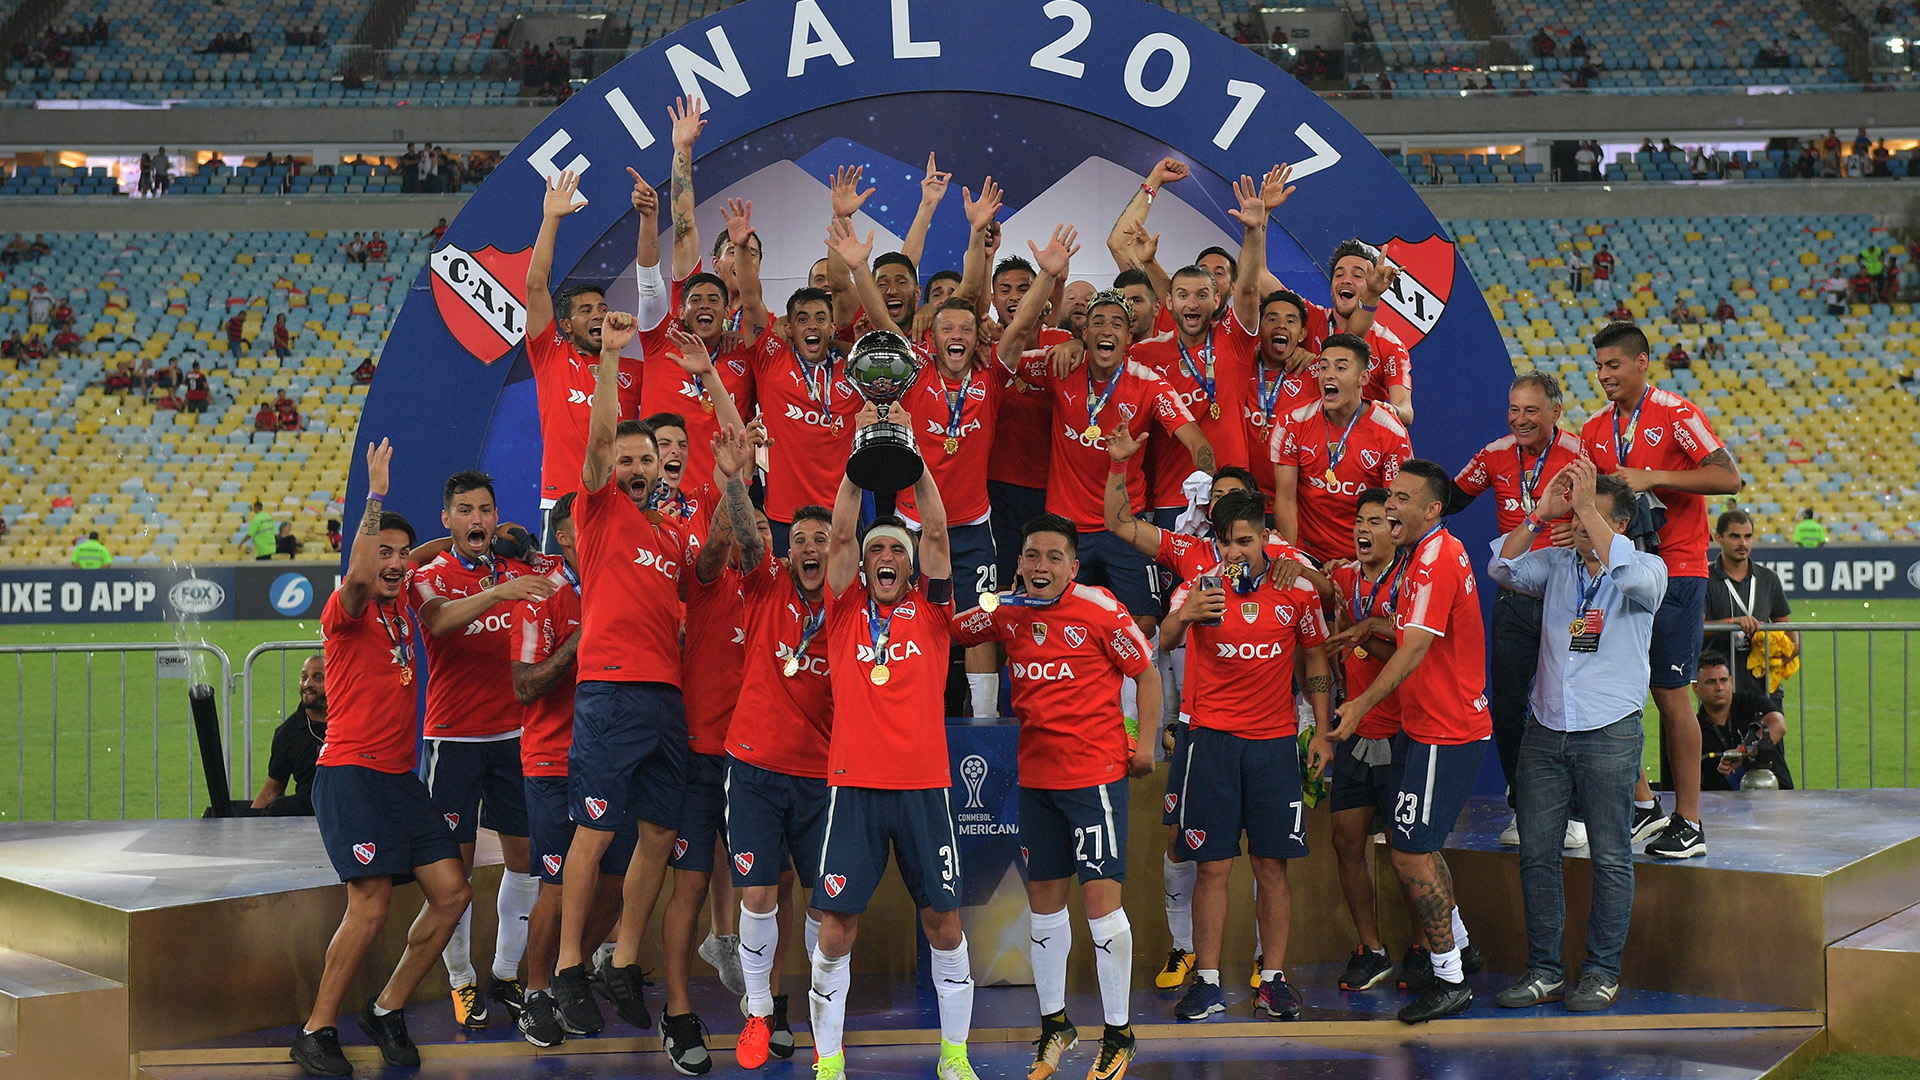 Con dos conquistas, Independiente es uno de los equipos que más veces ganó la Copa Sudamericana.